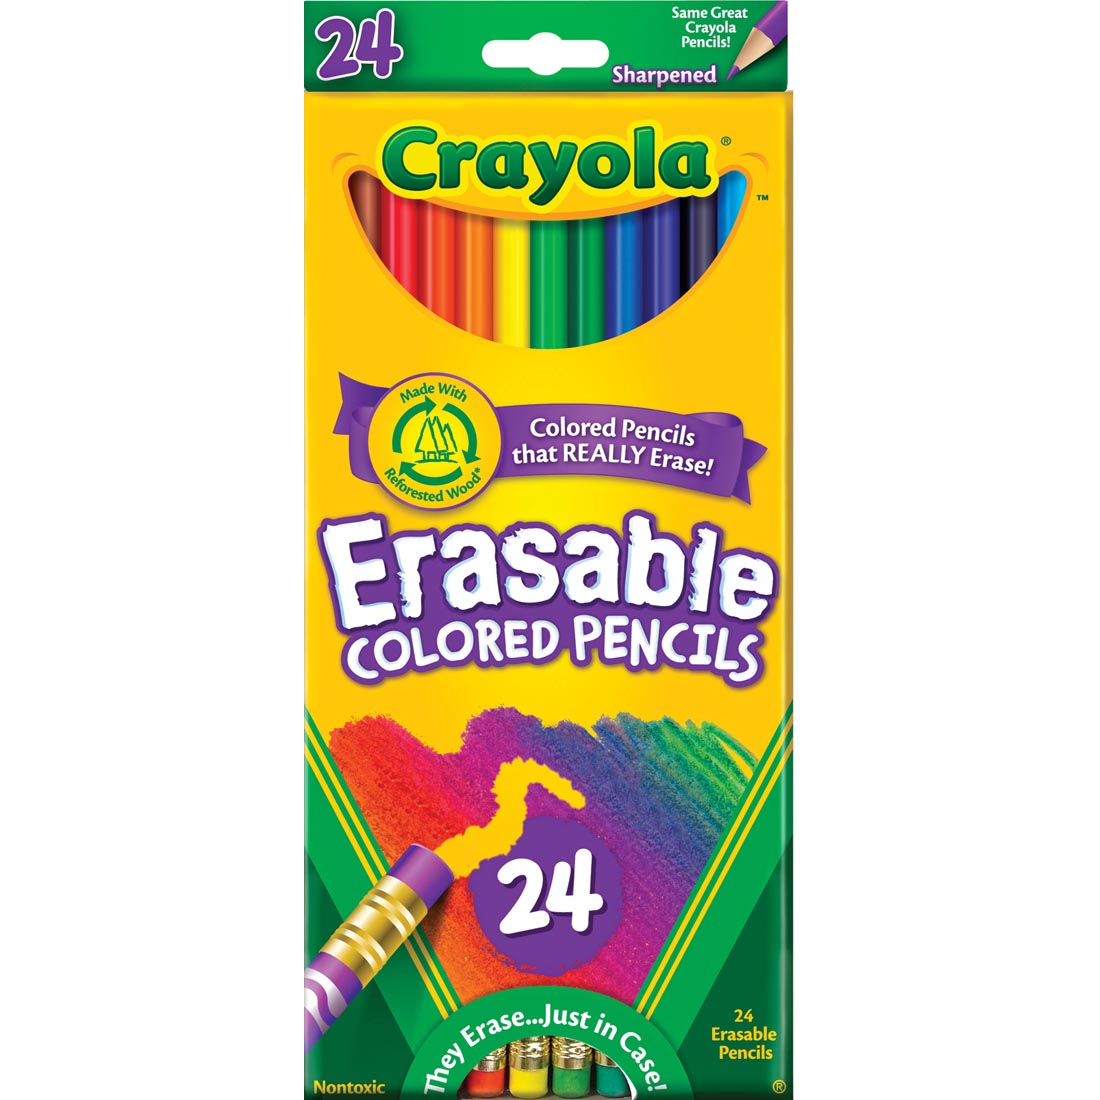 Package of Crayola Erasable Colored Pencils